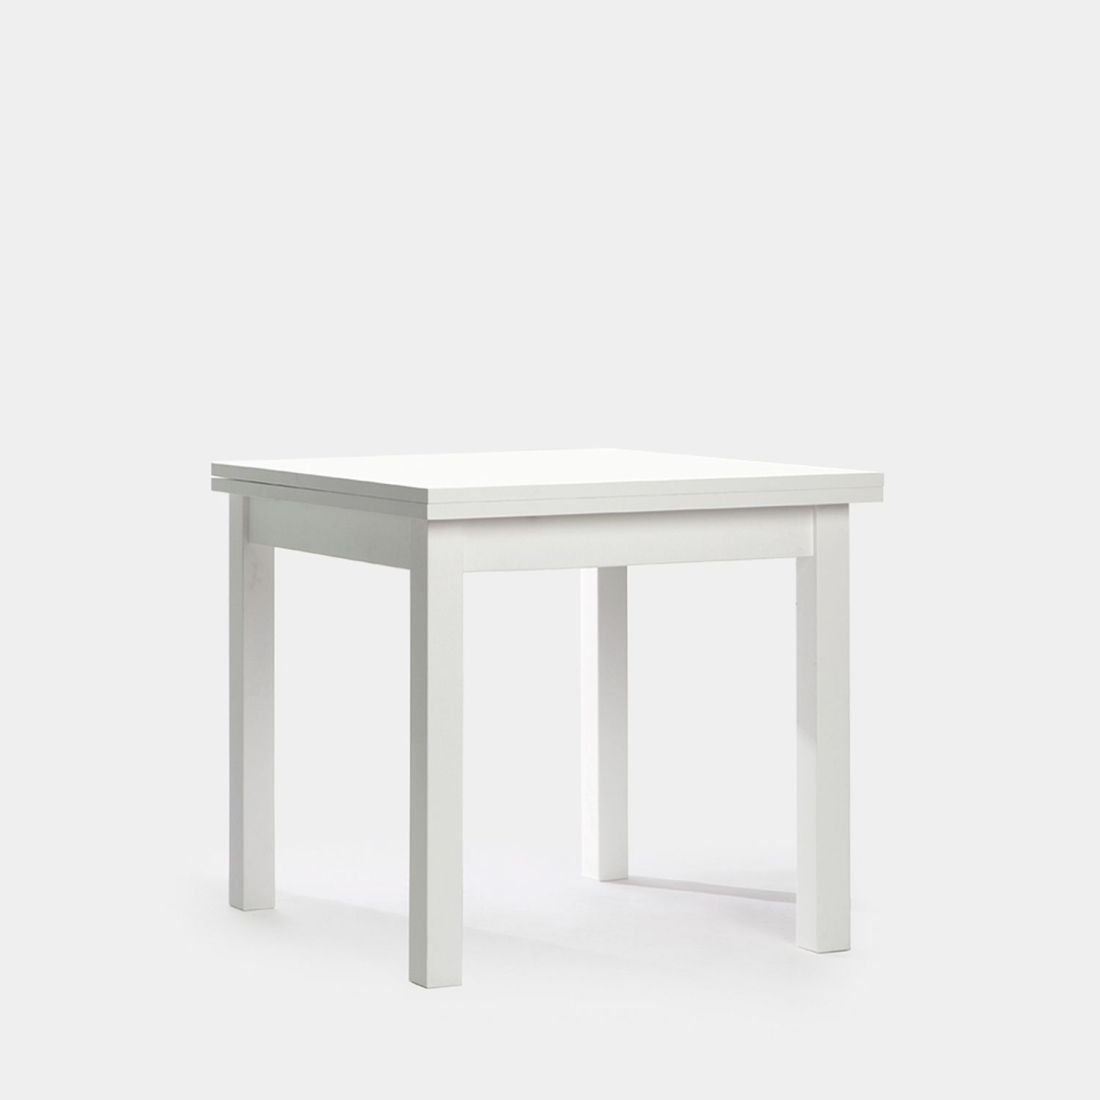 La mesa de comedor cuadrada extensible Florencia es de estilo contemporáneo. Su diseño de líneas rectas blanco